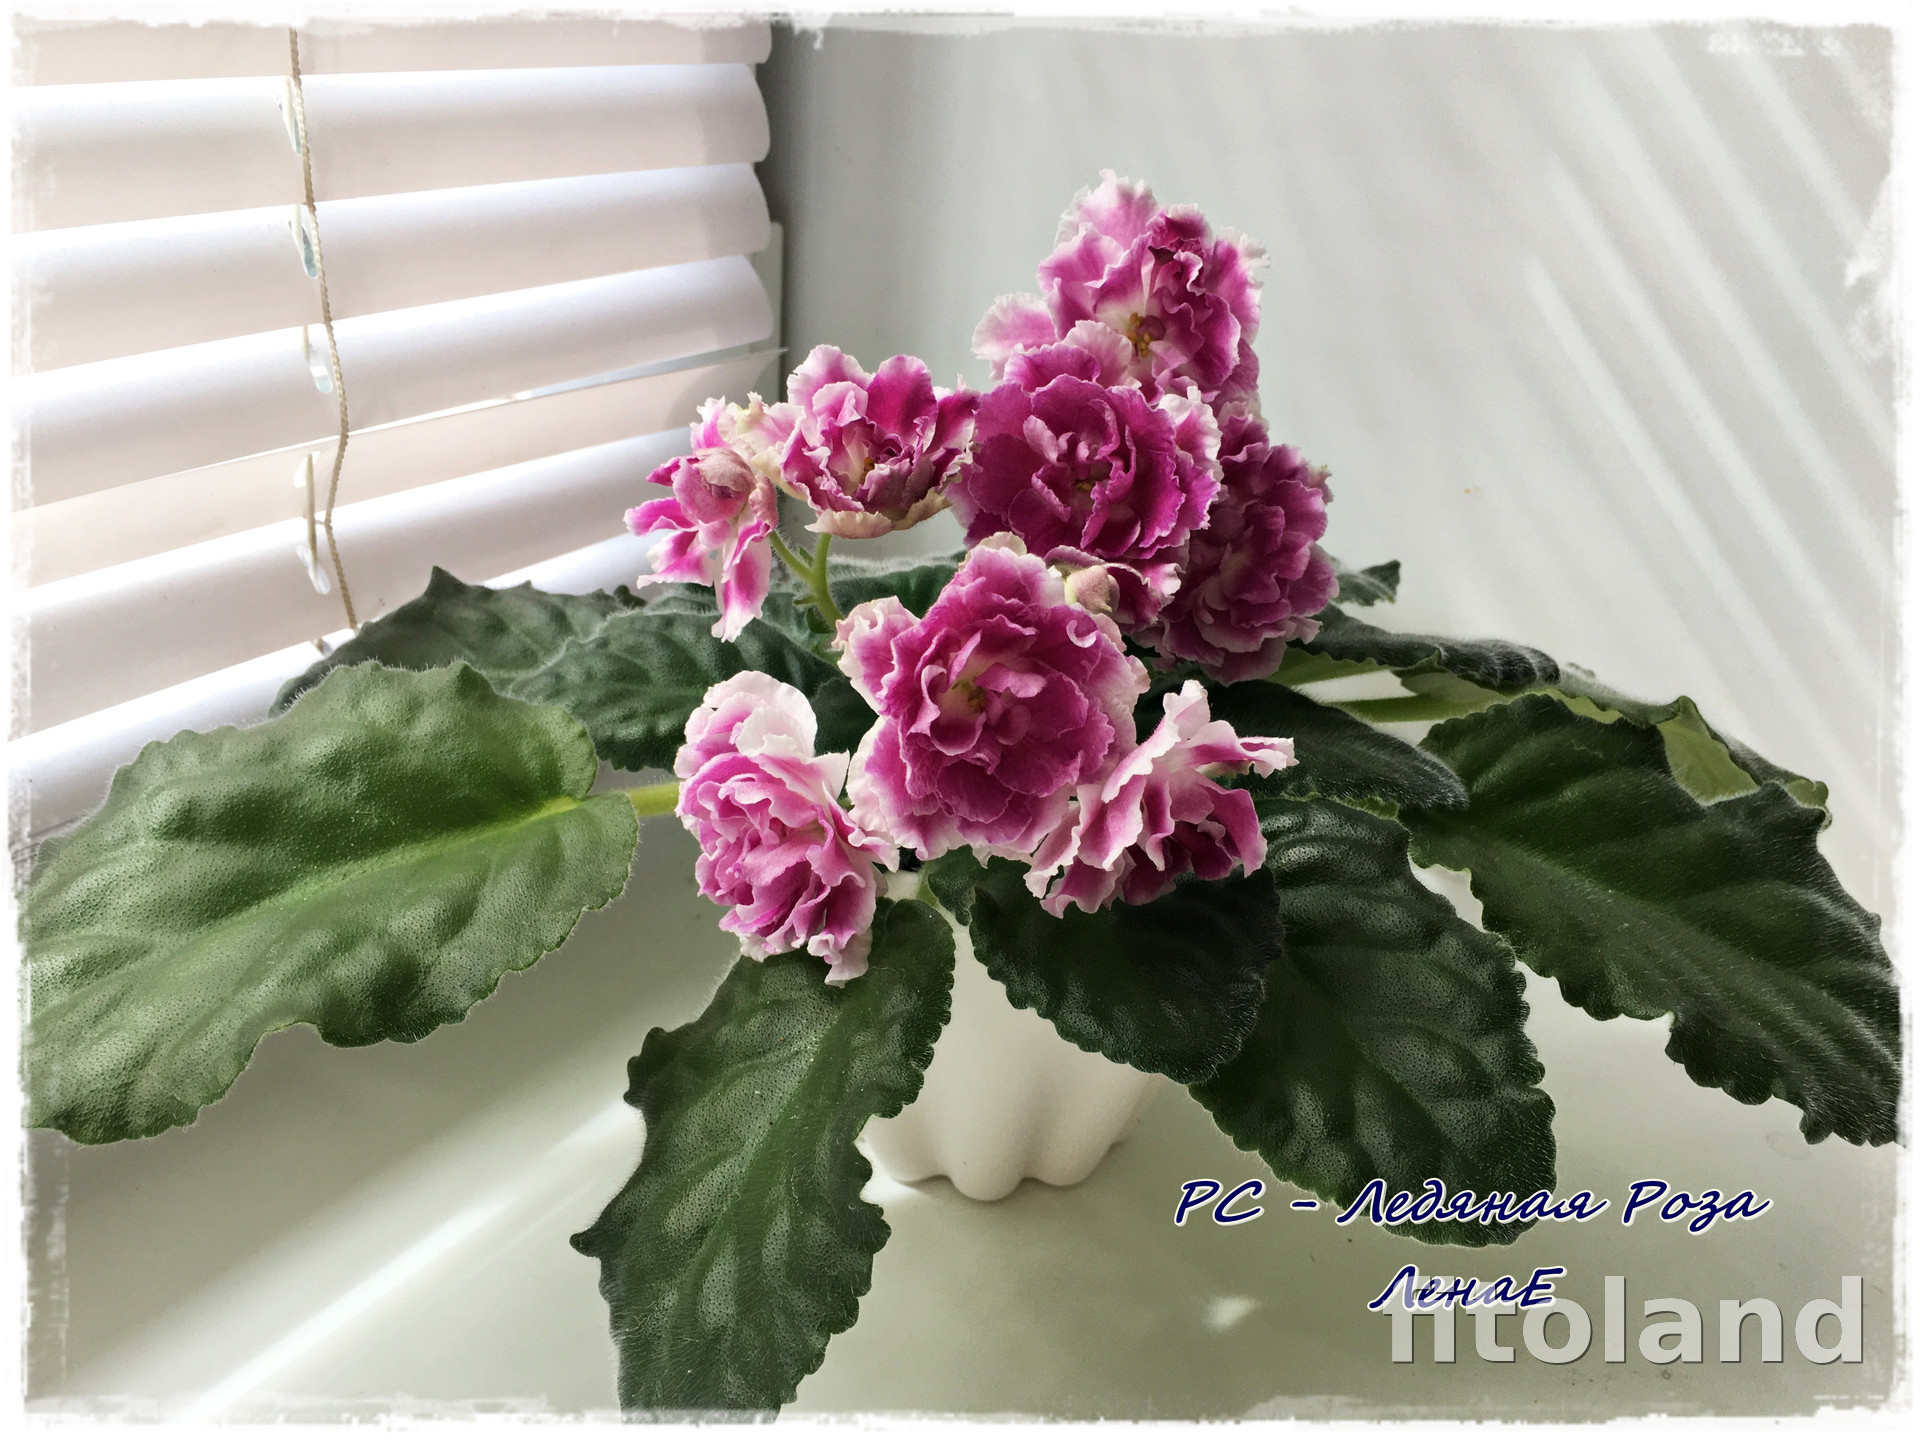 Фиалка РС-Ледяная Роза, фото